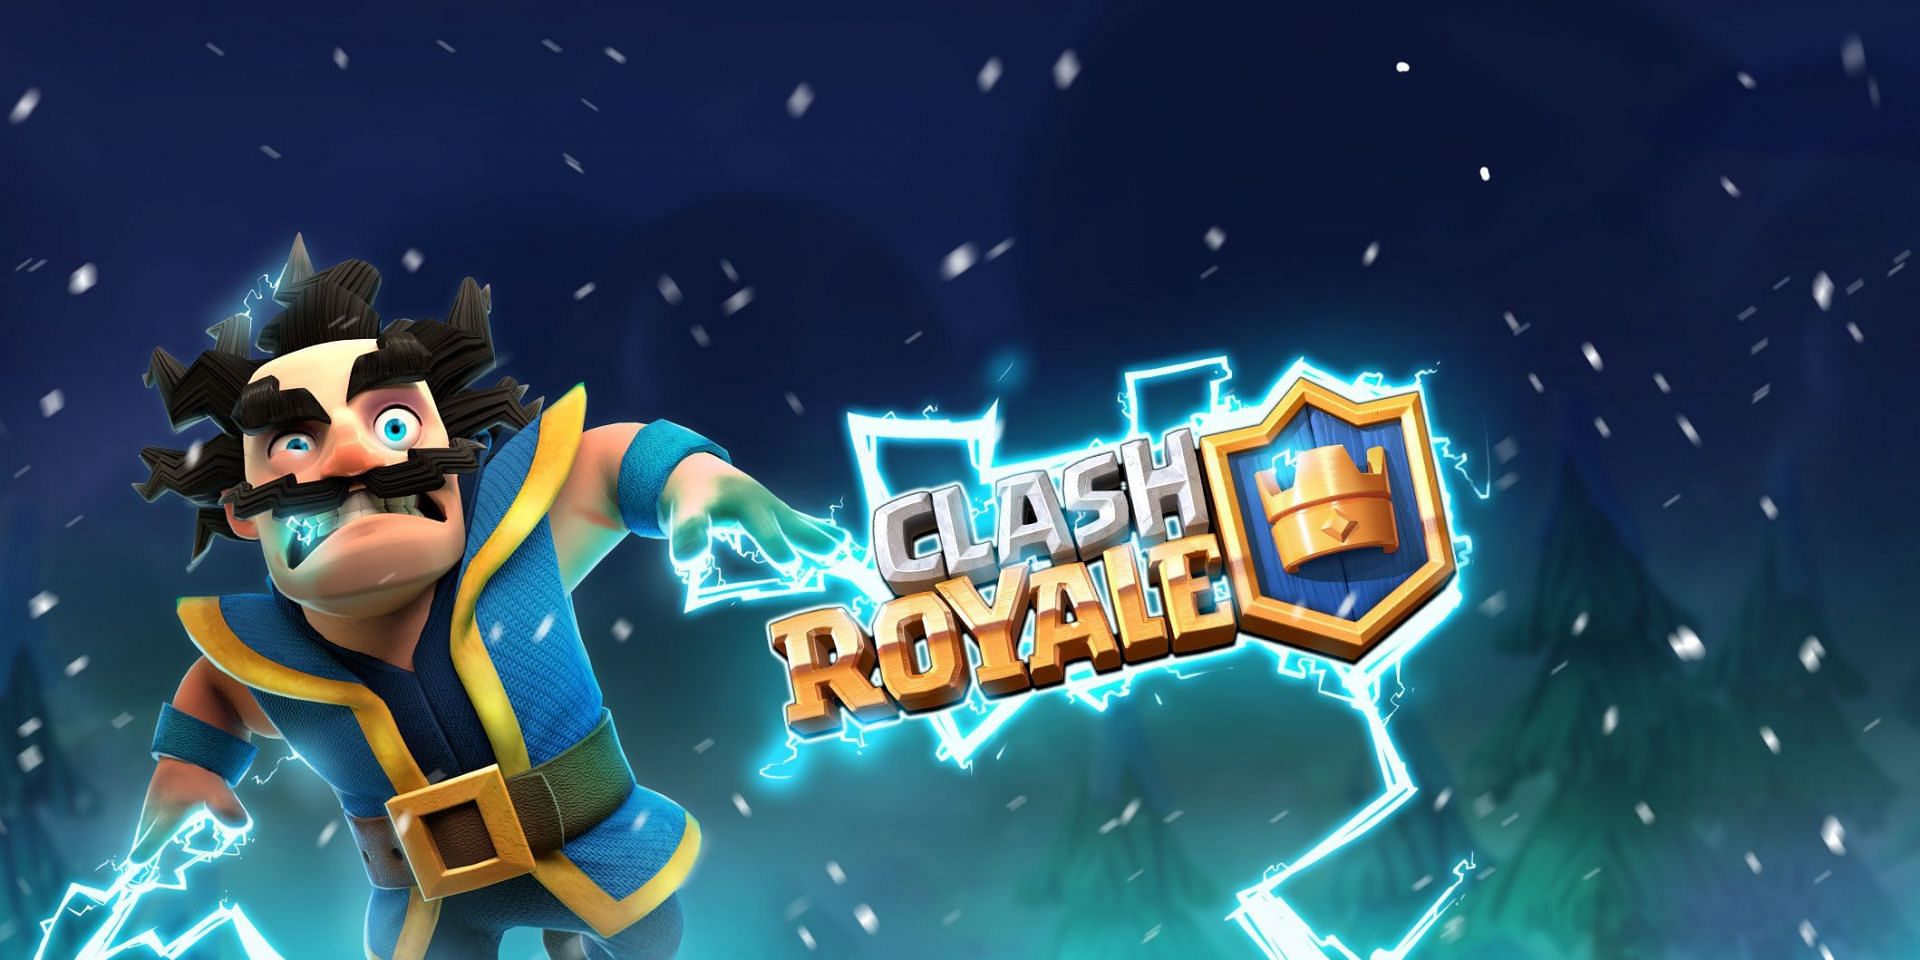 Clash Royale Electro Wizard (Image via Clash Royale)